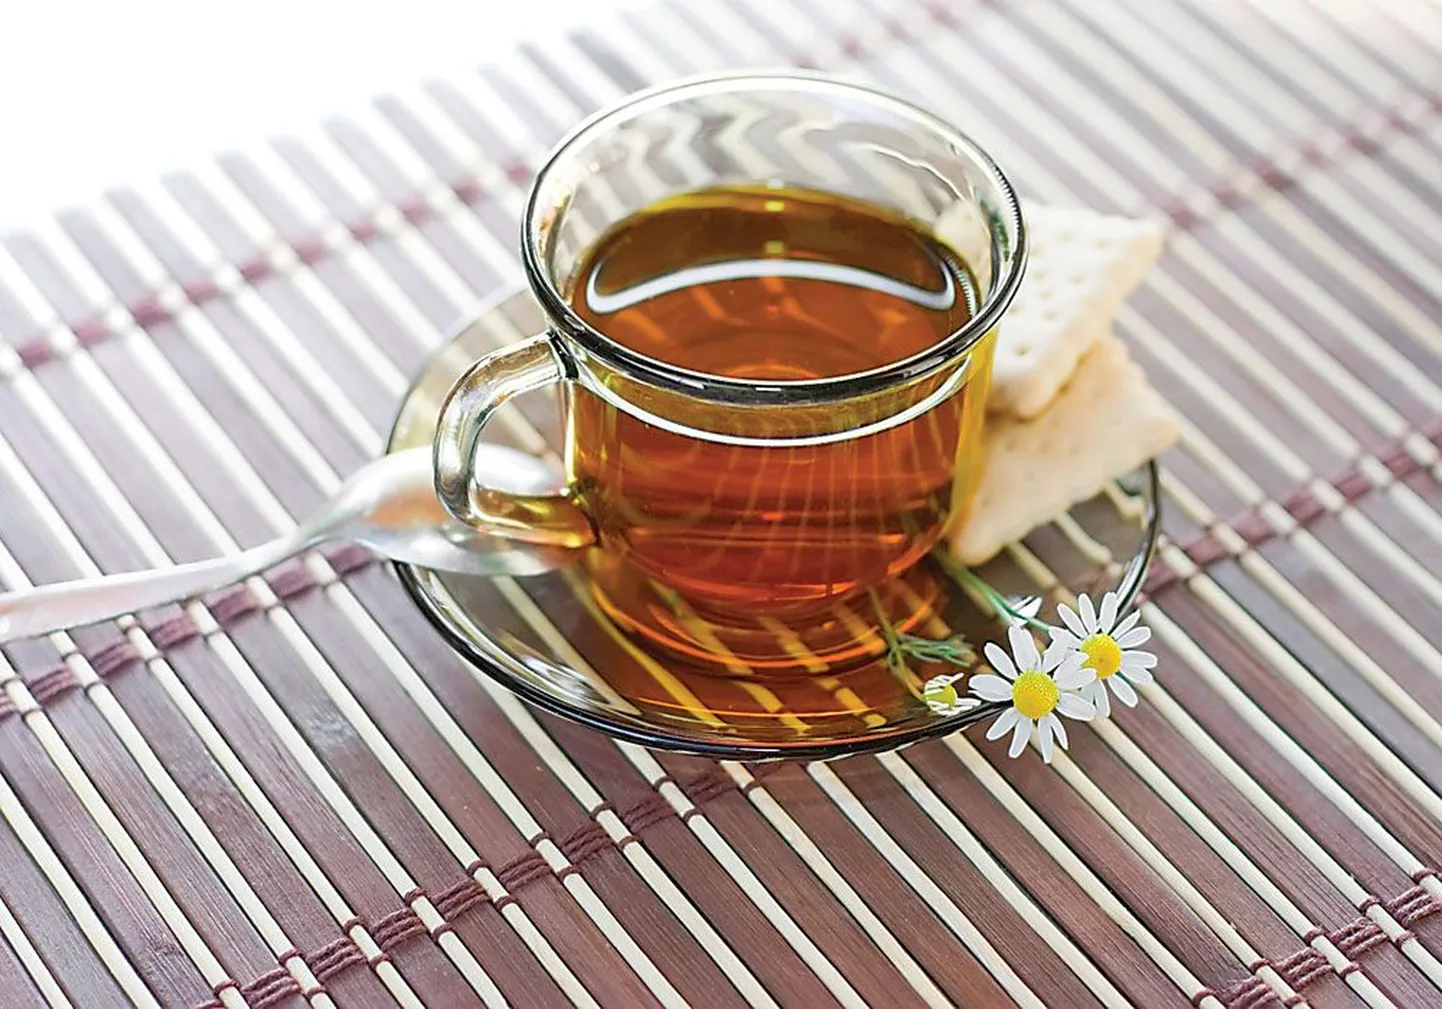 Сухари издавна были одним из наиболее распространенных лакомств, подаваемых к чаю.